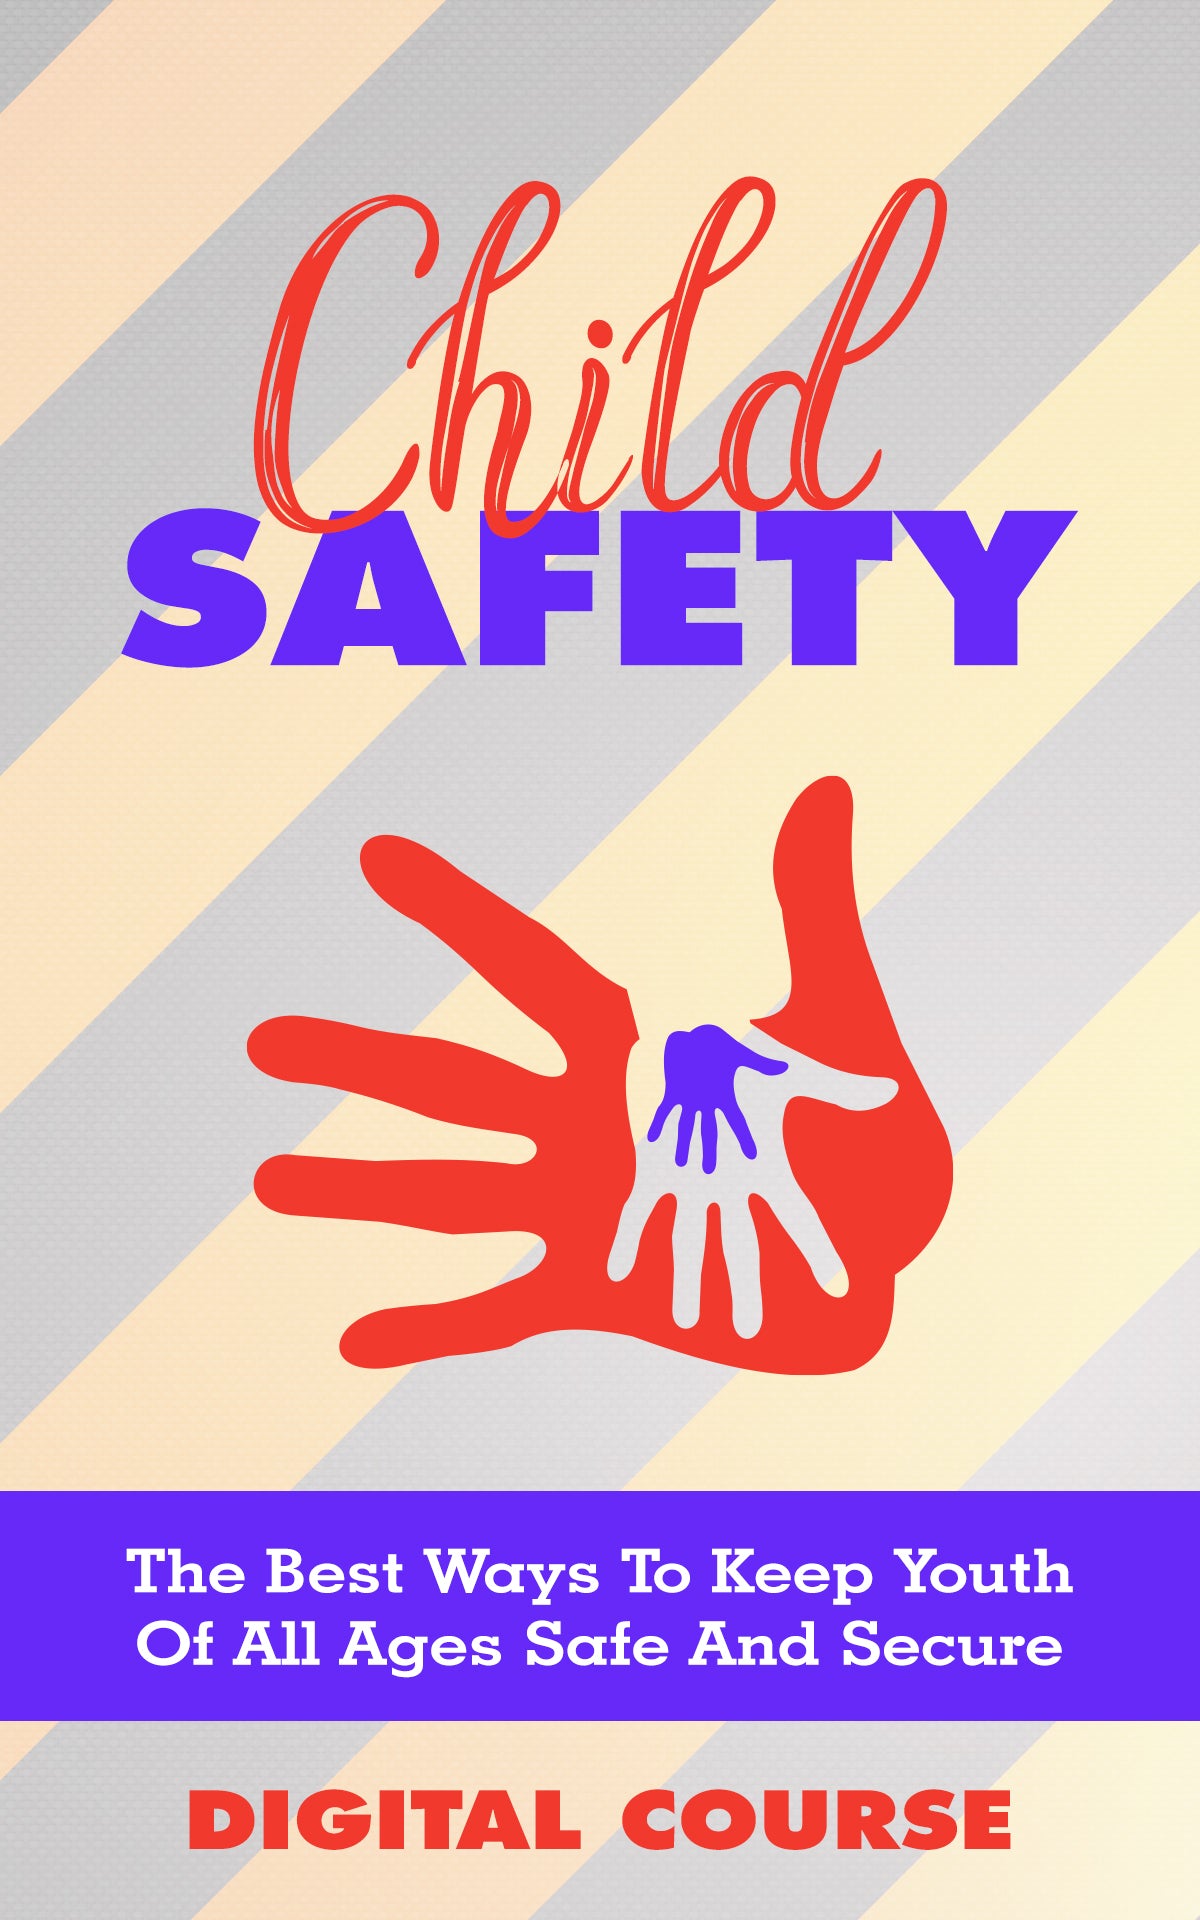 Child Safety